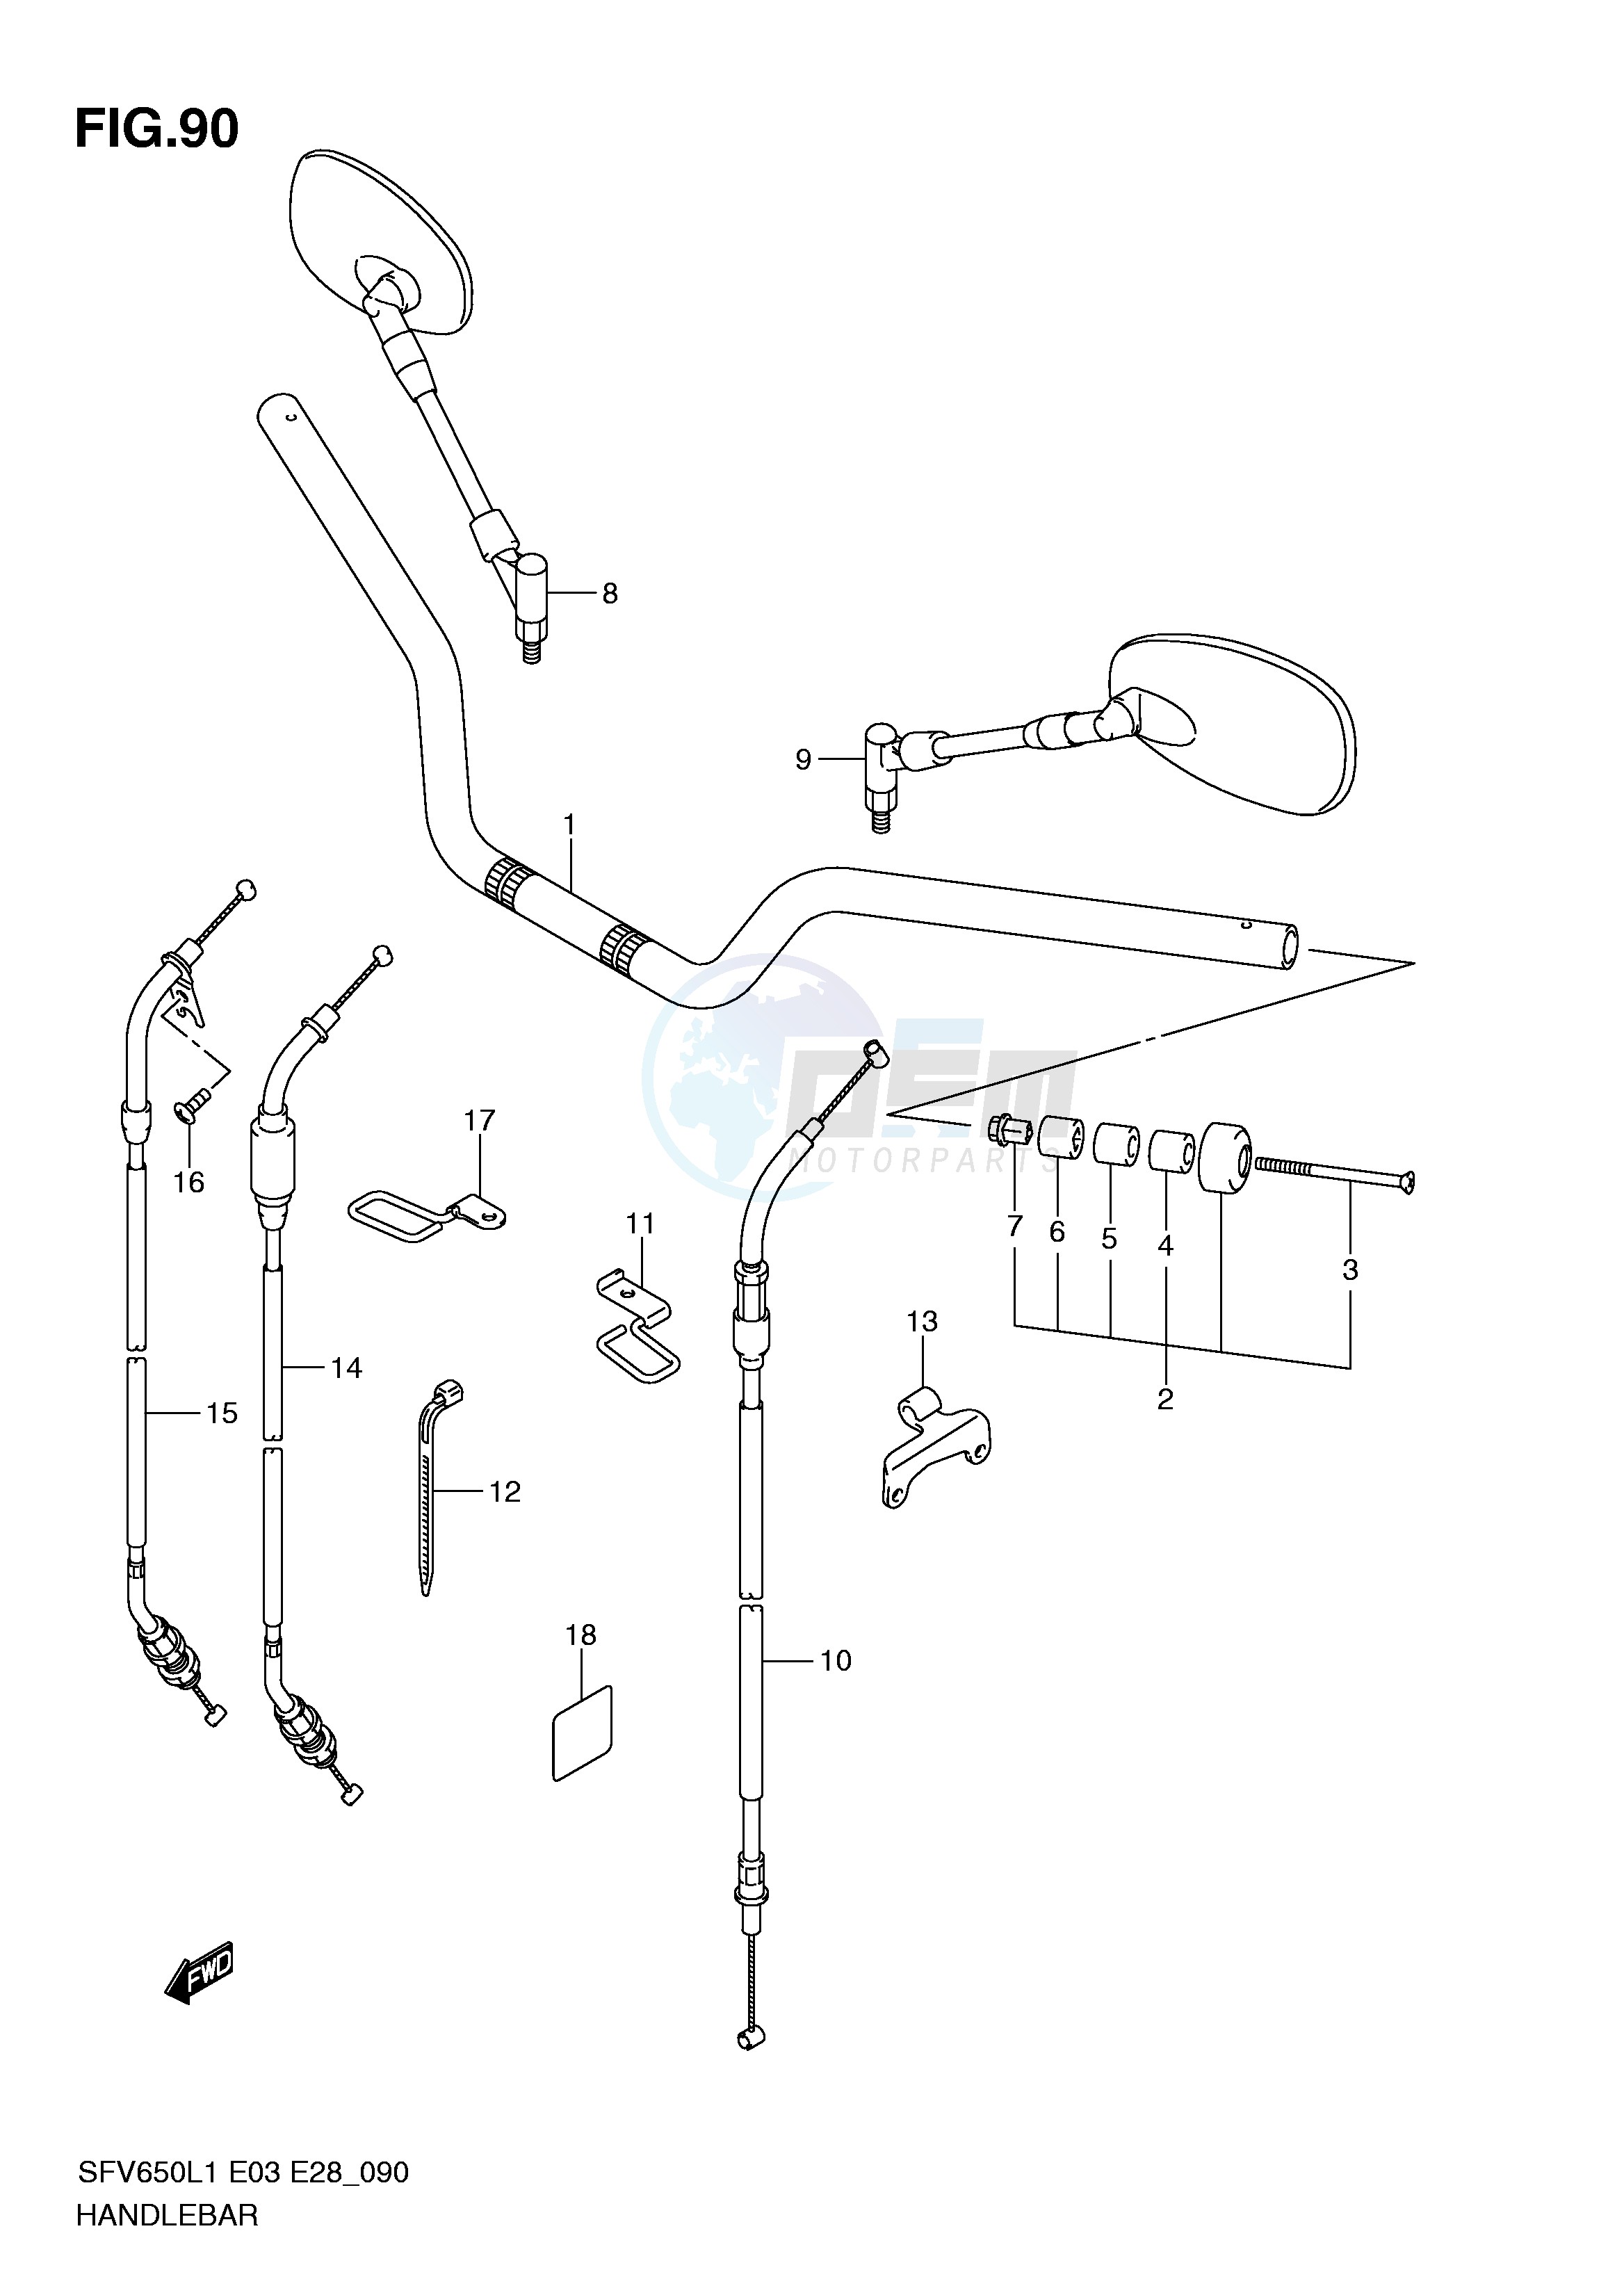 HANDLEBAR (SFV650AL1 E33) blueprint